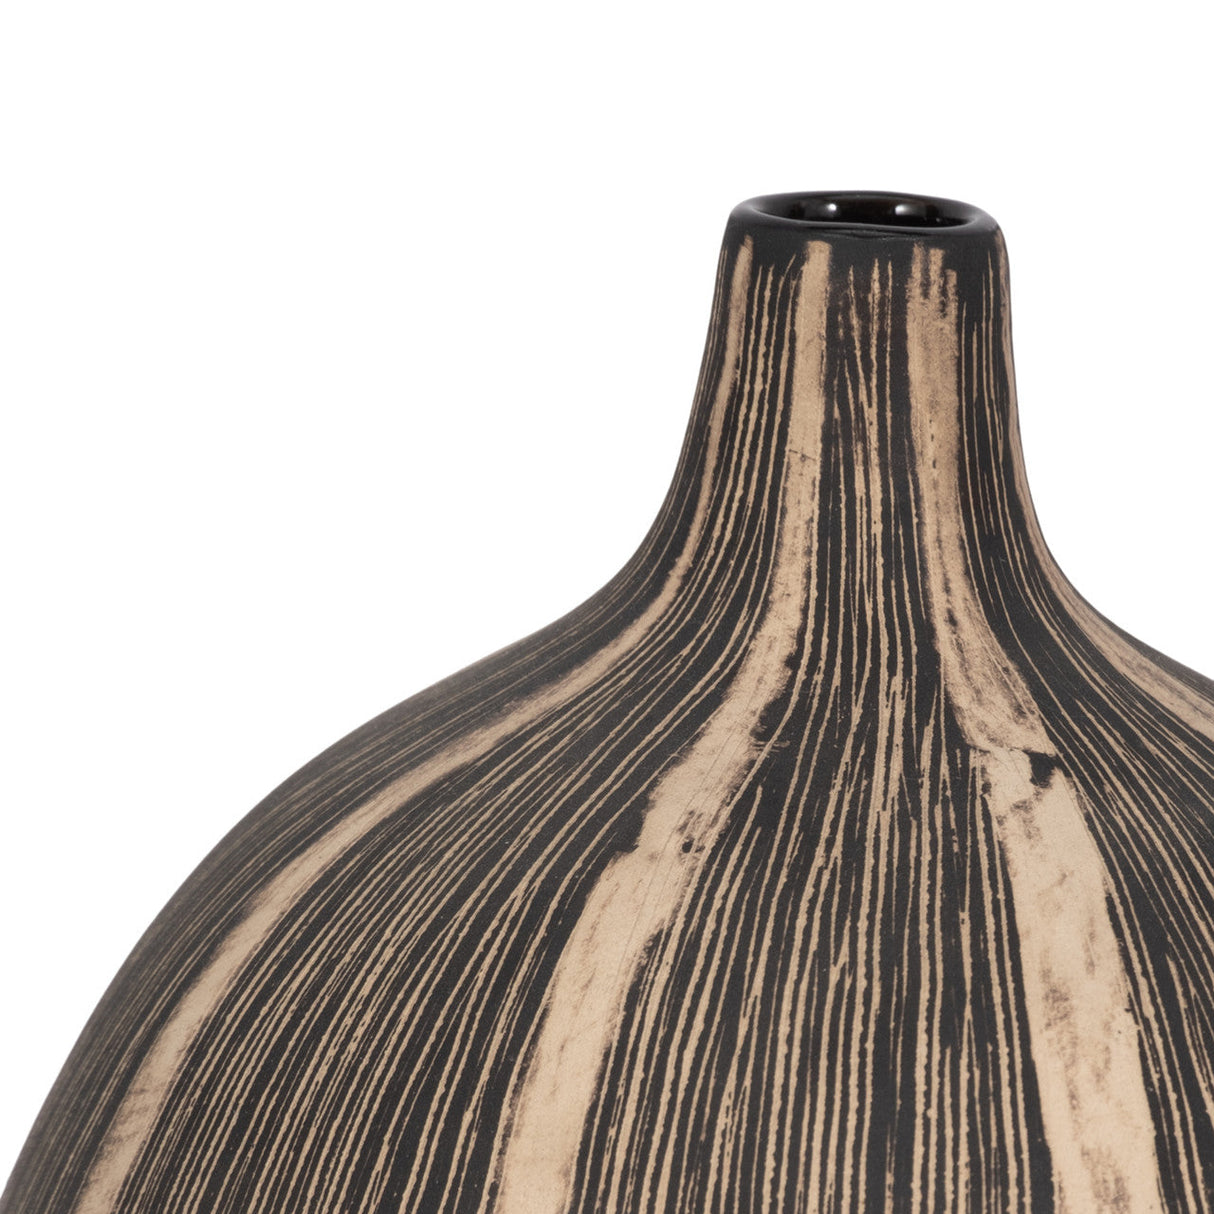 10"h Tribal Vase, Brown